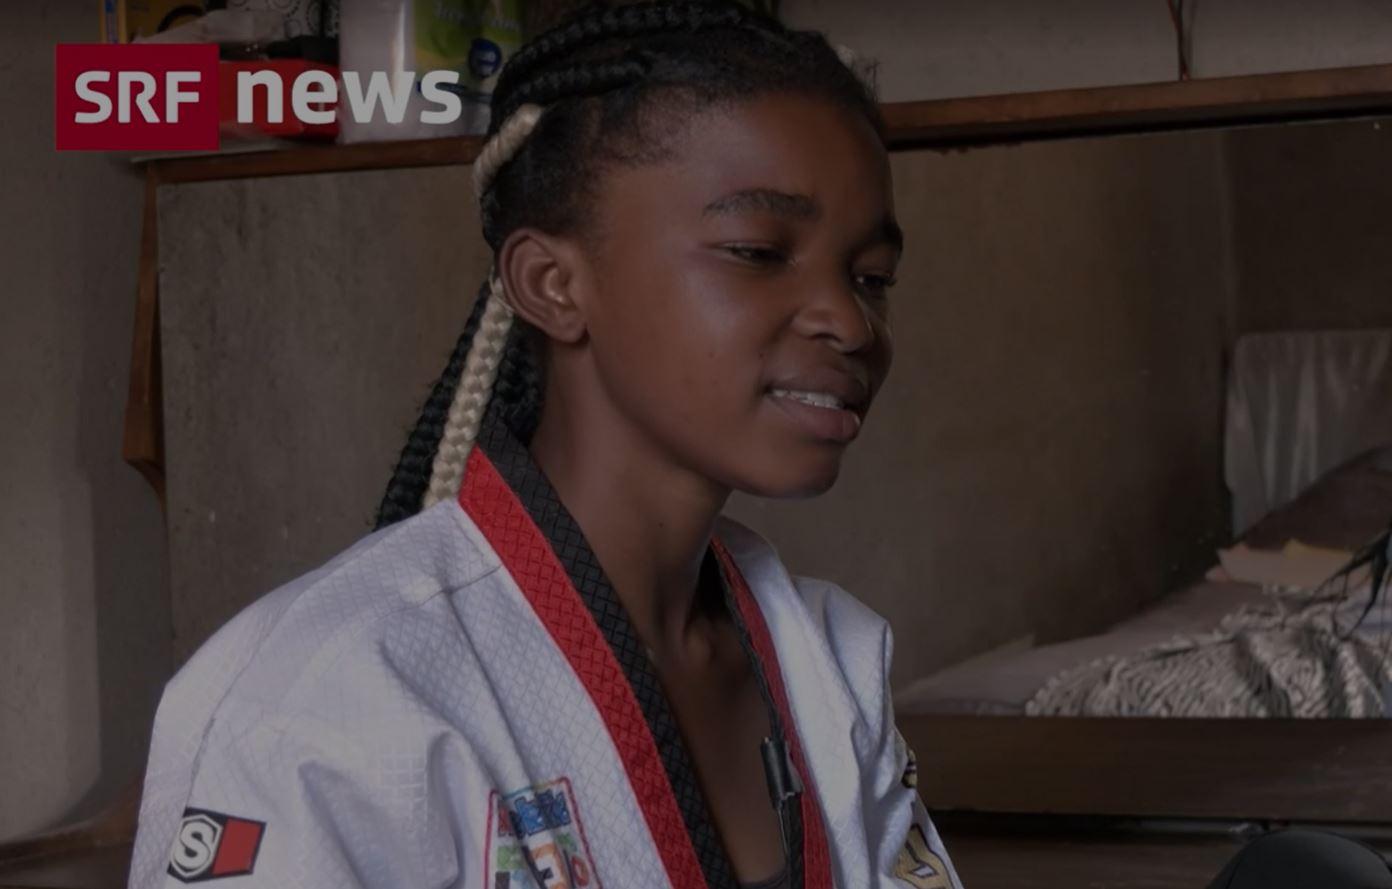 SRF news: Mit Taekwondo kämpfe ich gegen Kinderehen